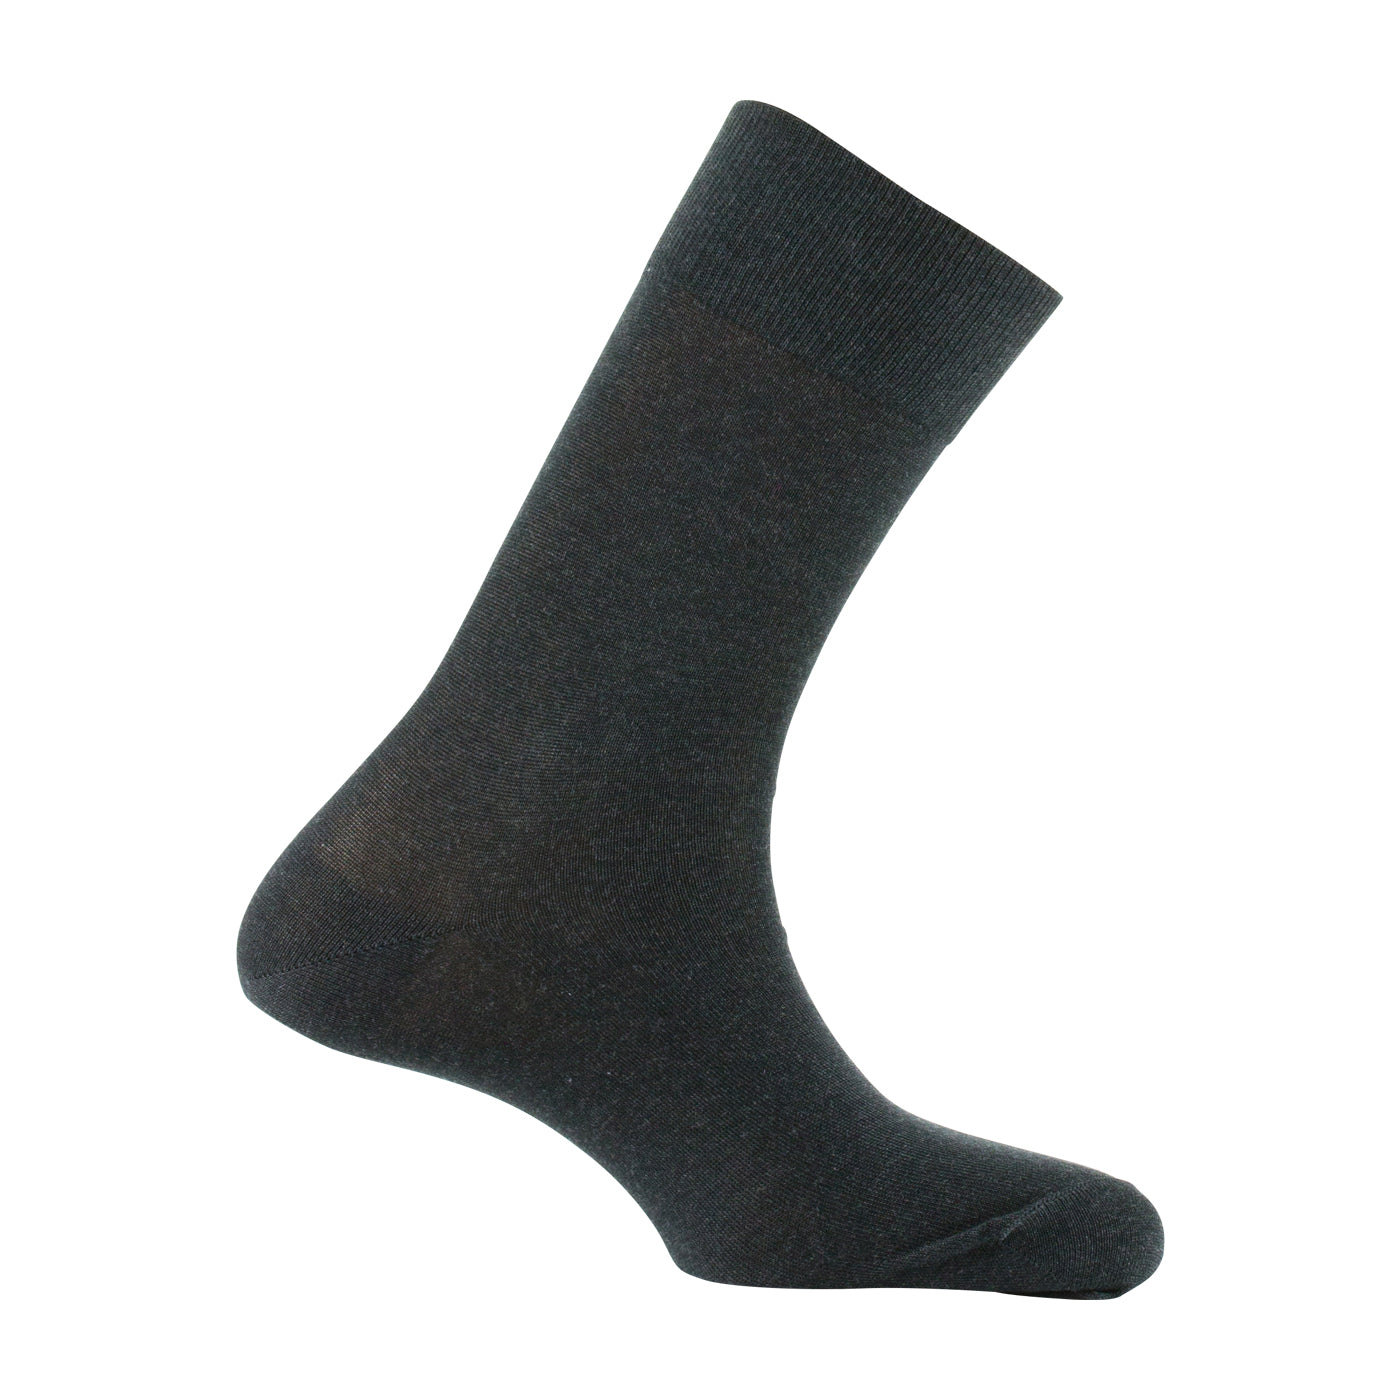 Mi-chaussettes homme noir T43/46 TEX : le lot de 2 paires de mi